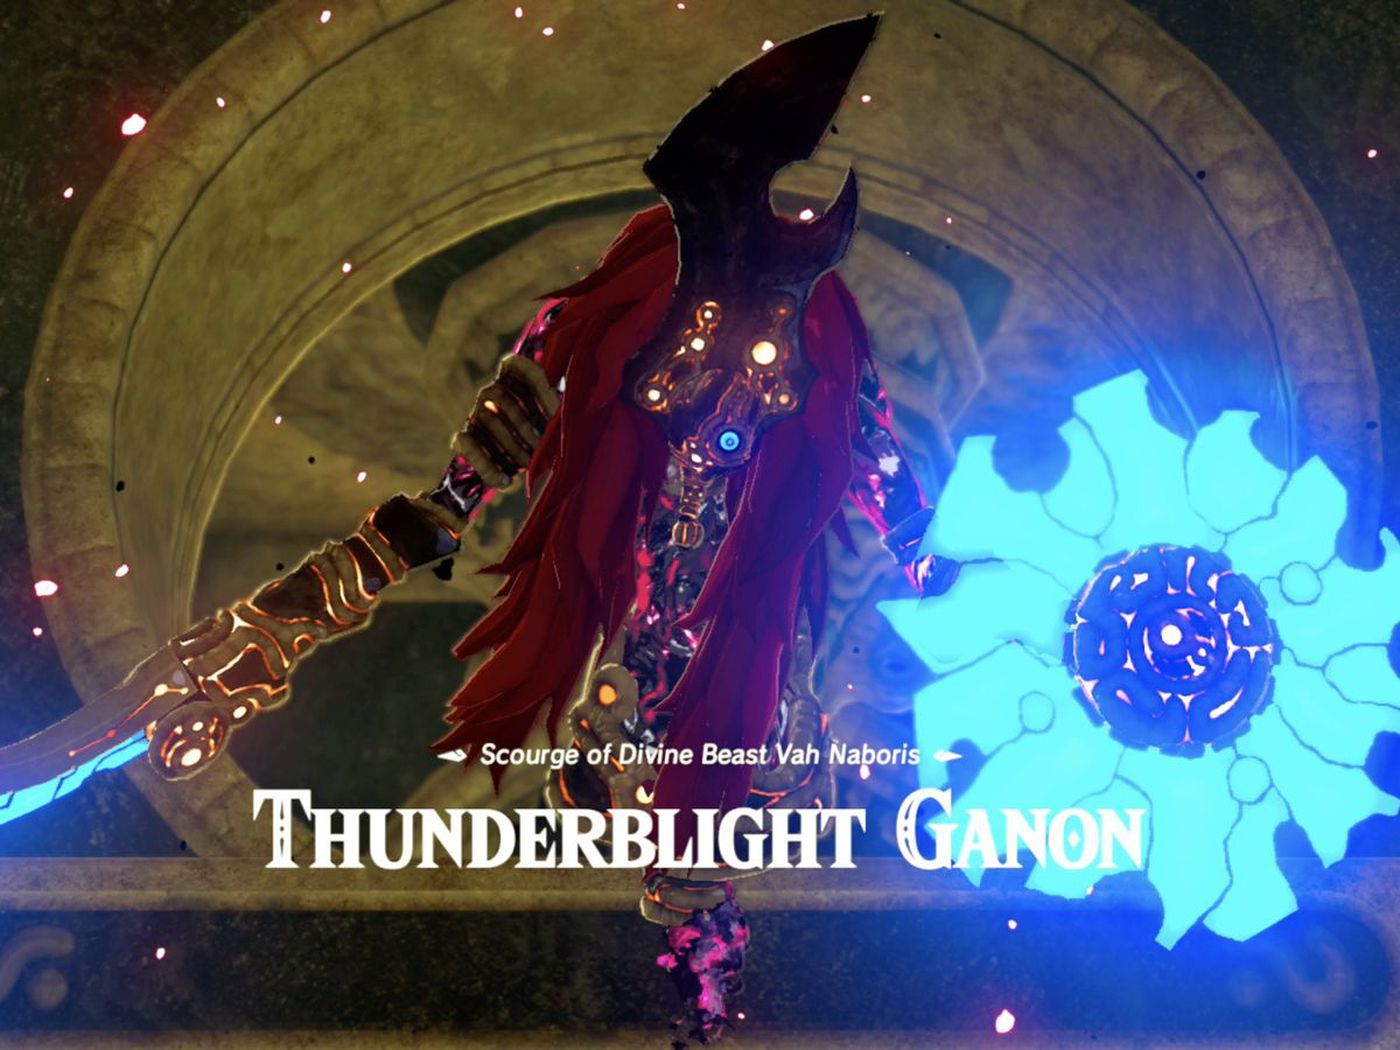 Thunderblight Ganon guide